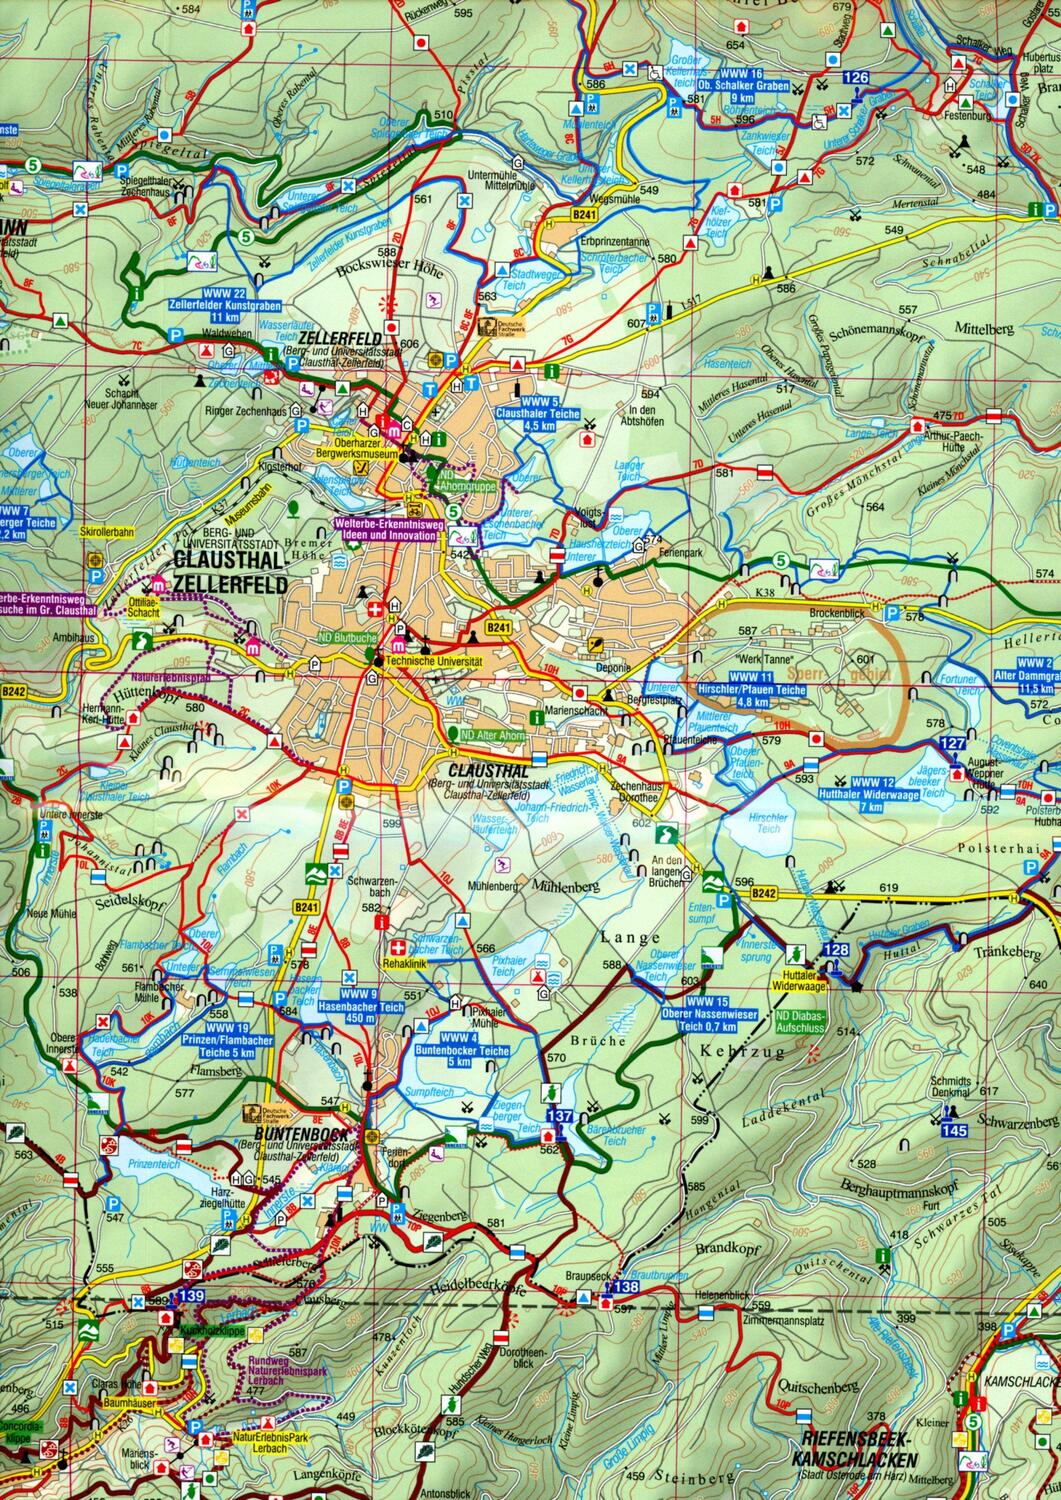 Bild: 9783869732244 | Kartenset Harz | 3-teiliges wetterfestes Kartenset vom gesamten Harz